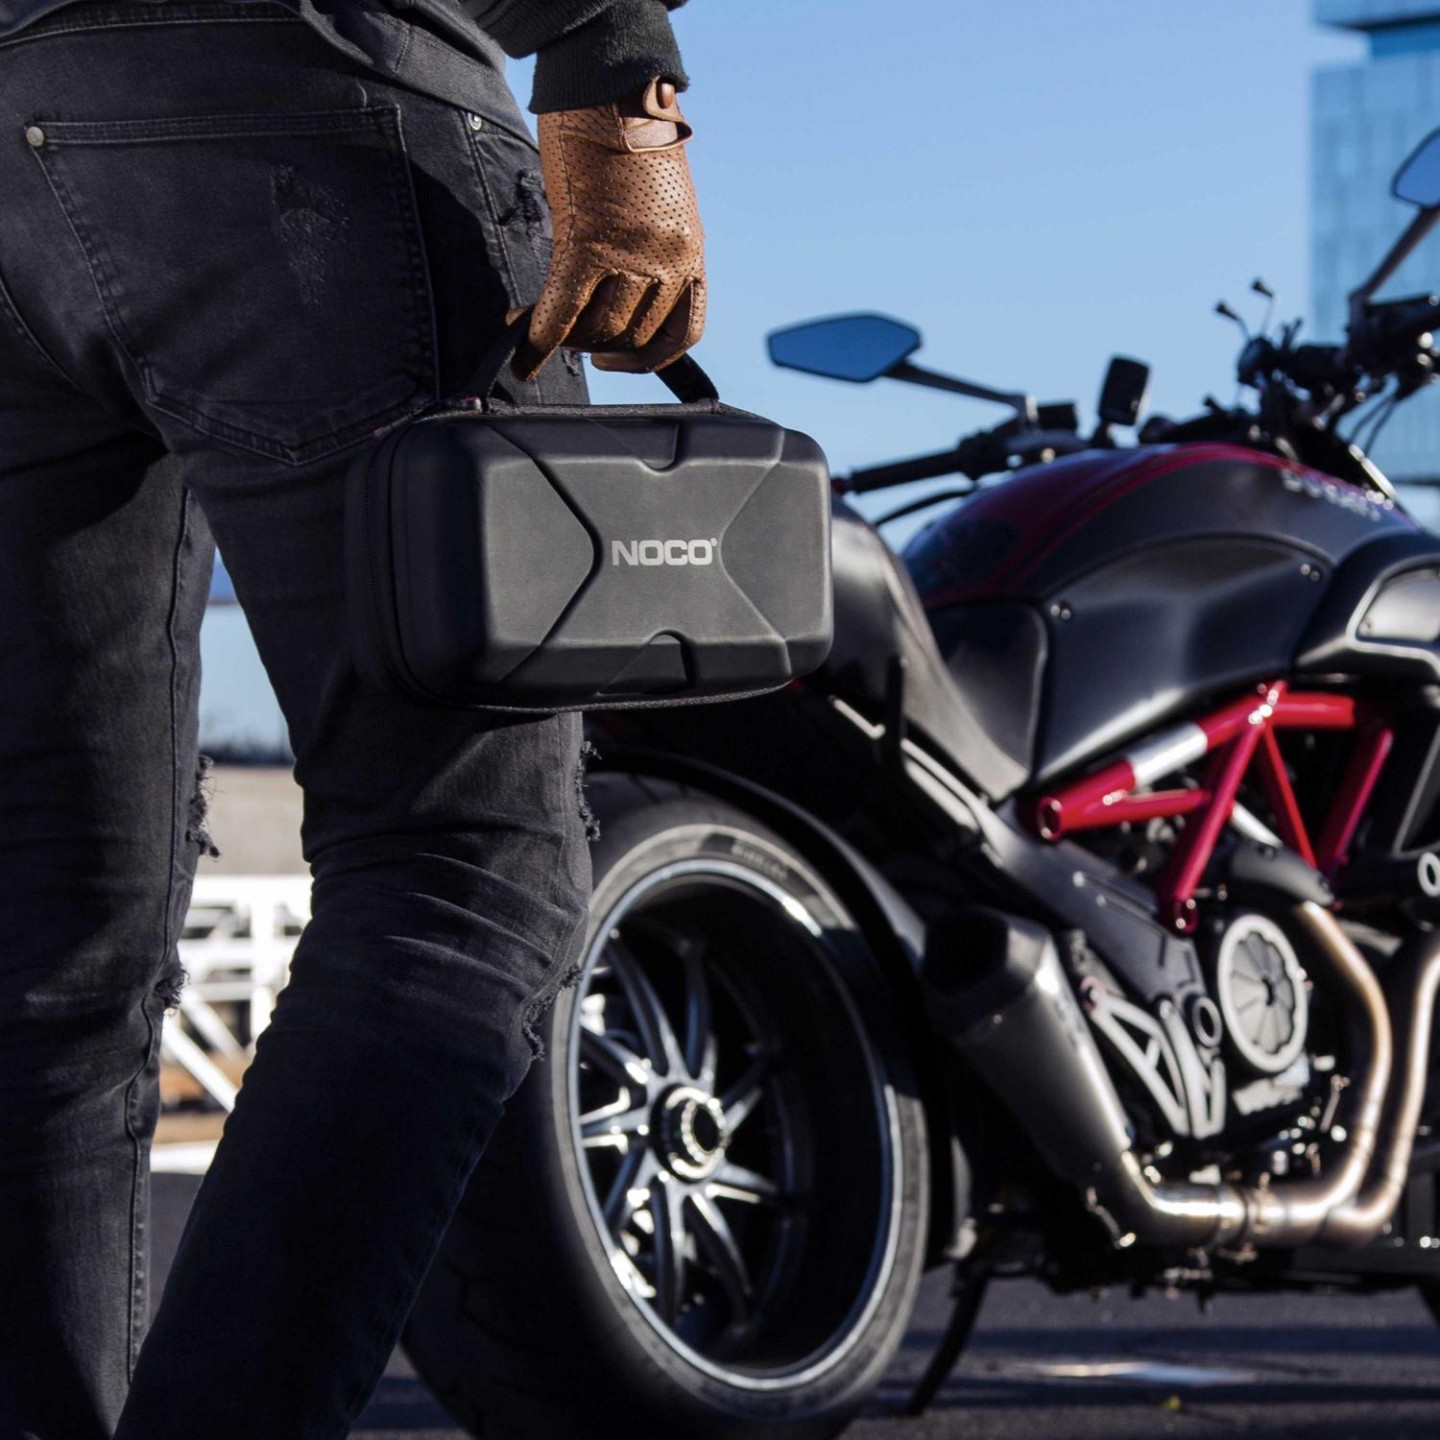 Noco バッテリー上がりトラブル増えてます バイク編 本国アメ車業界の流れがわかる 最新アメ車トレンド情報満載ブログ